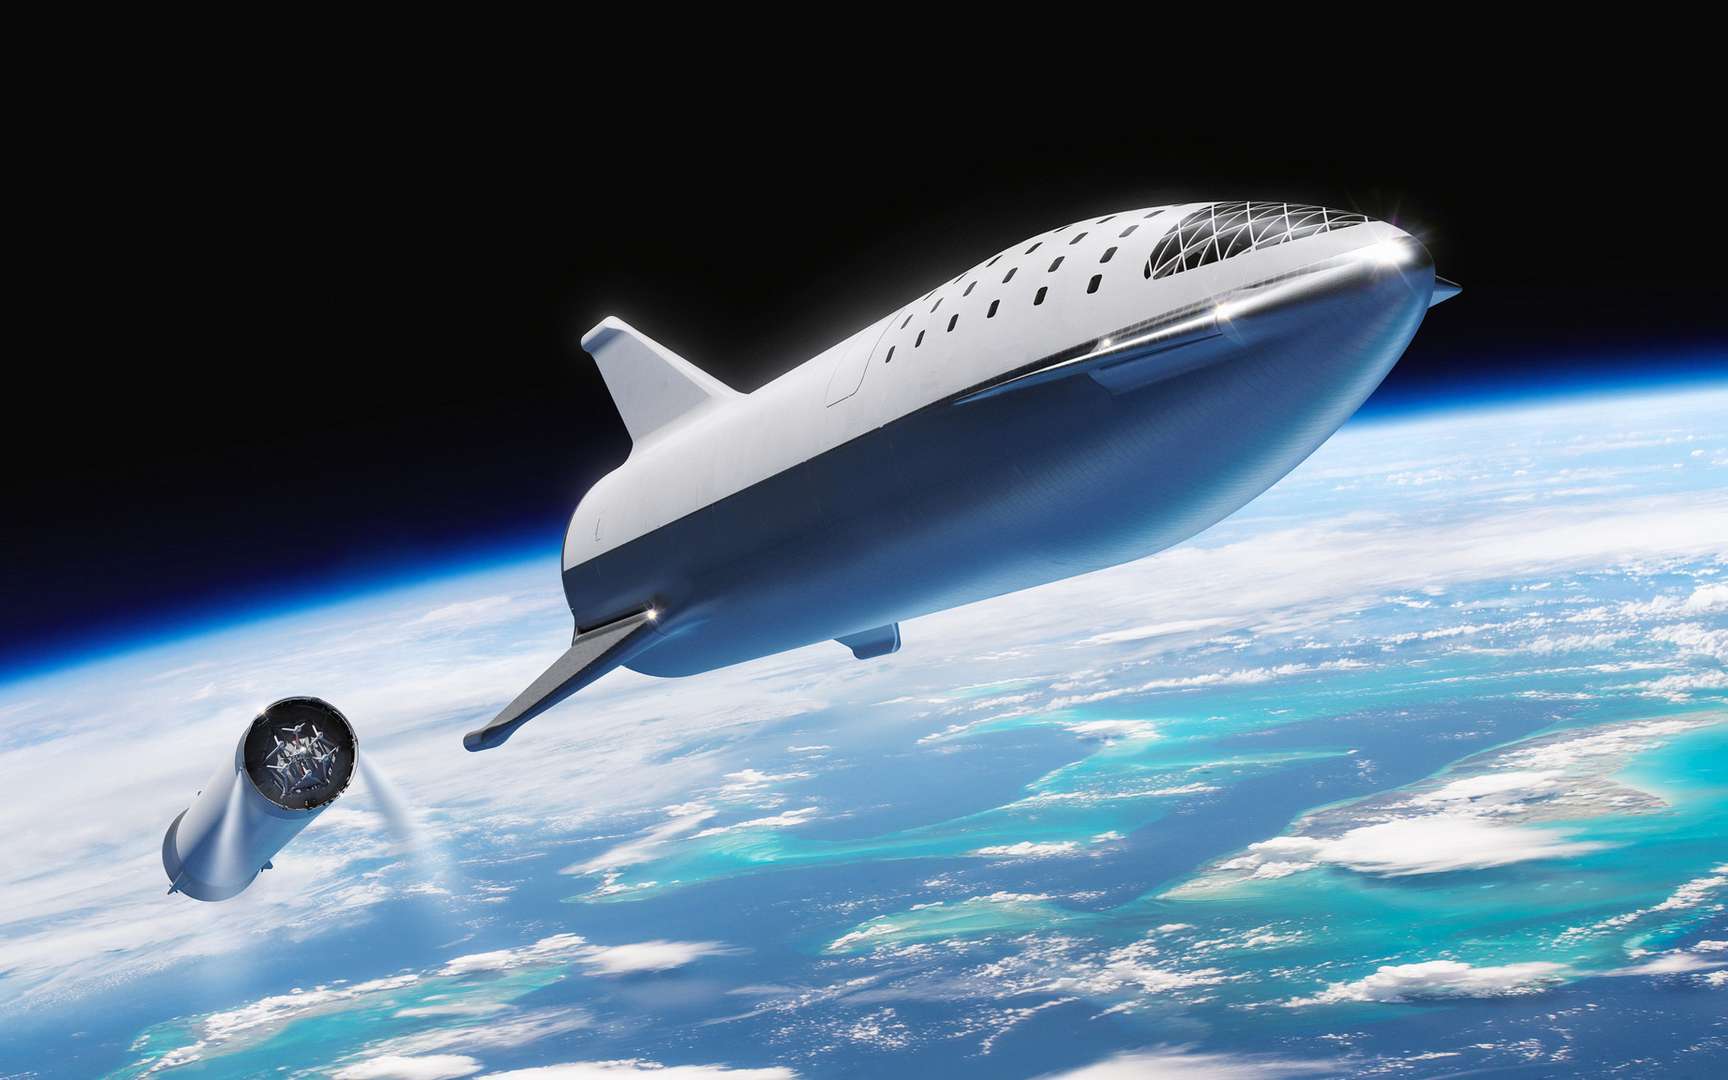 Vue d'artiste du vaisseau Starship développé par SpaceX. Le Starhopper, prototype achevé en janvier 2019, a réussi avec brio son premier « saut » pour tester tous les systèmes du futur Starship. © SpaceX